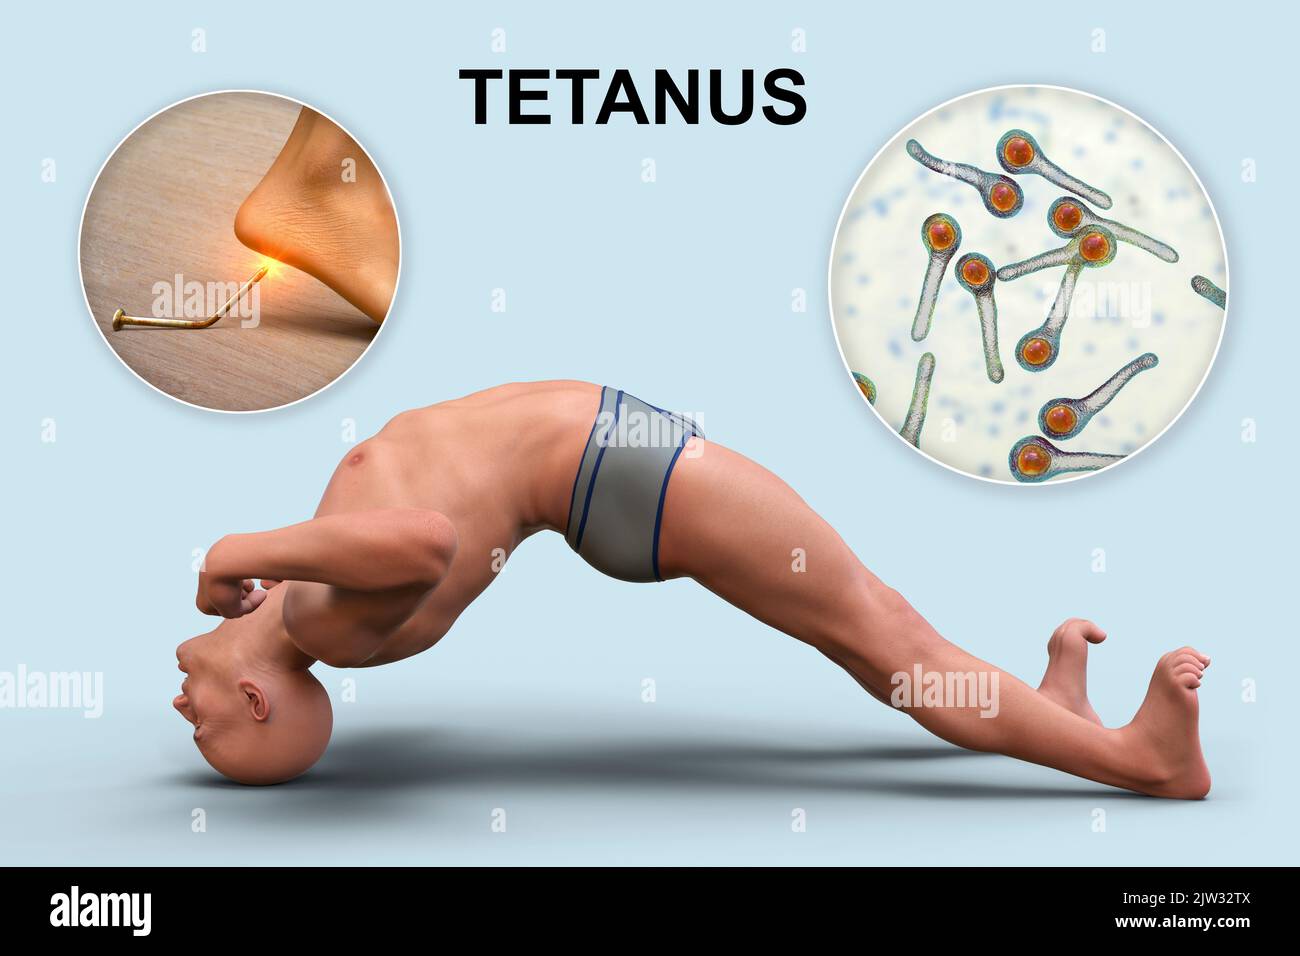 Mechanismus der Tetanus-Krankheit, Illustration. Eine Hautwunde ist mit Clostridium tetani-Bakterien kontaminiert, die ein Neurotoxin produzieren, das das Rückenmark erreicht und spastische Lähmungen verursacht. Der Mann befindet sich im Opisthotonus (Rückwärtsspasmus), einem Zustand schwerer Hyperdehnung und Spastik. Stockfoto